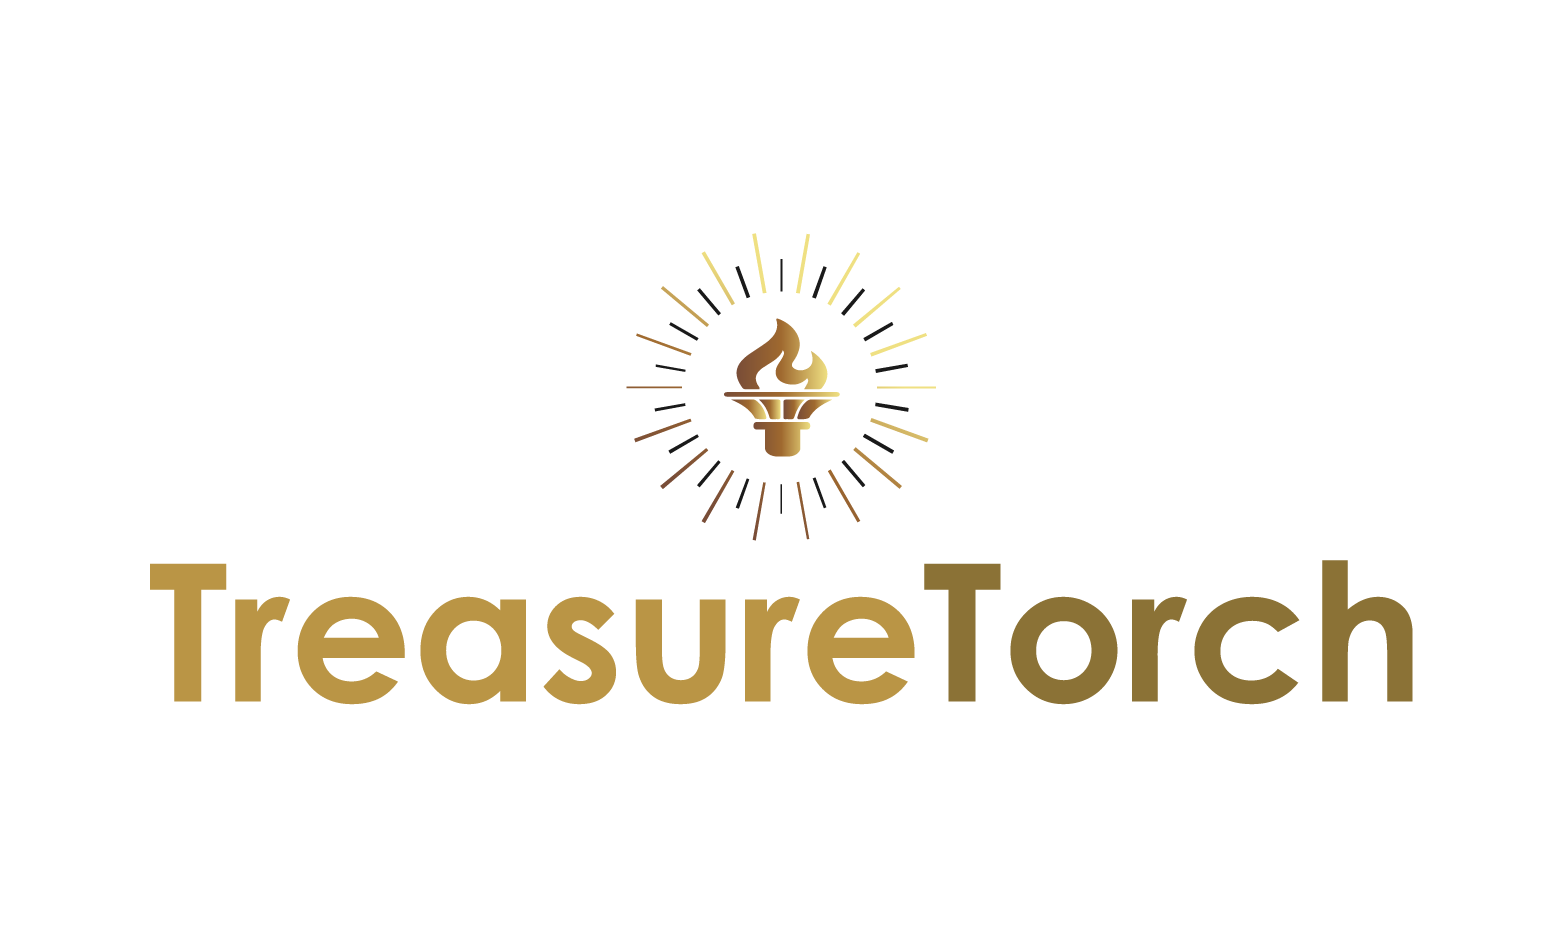 TreasureTorch.com - Creative brandable domain for sale